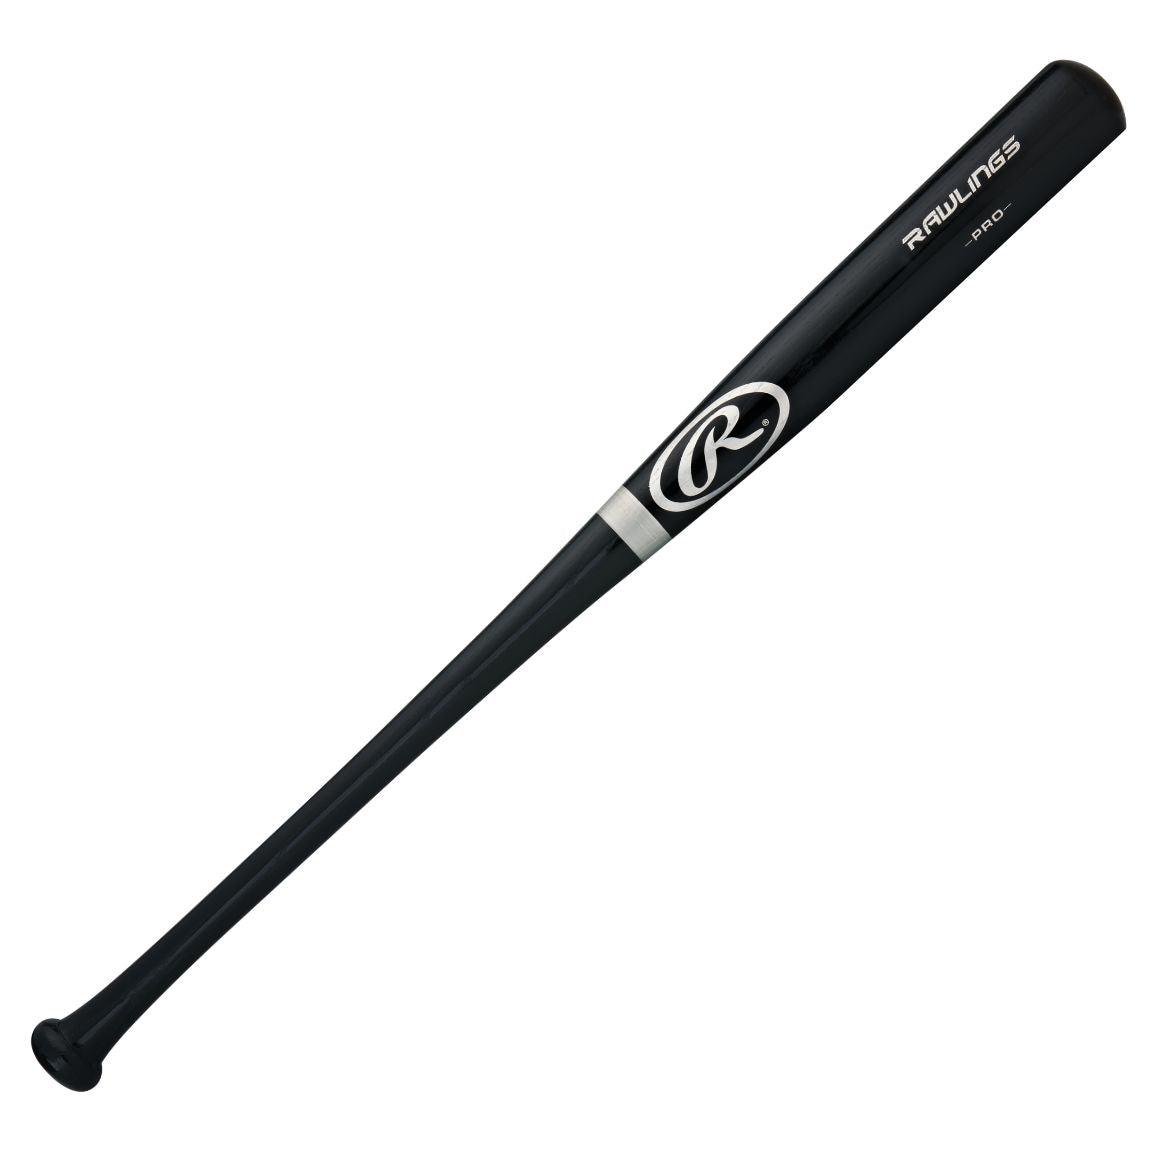 Adirondak 232 Wood Ash Bat - Sports Excellence